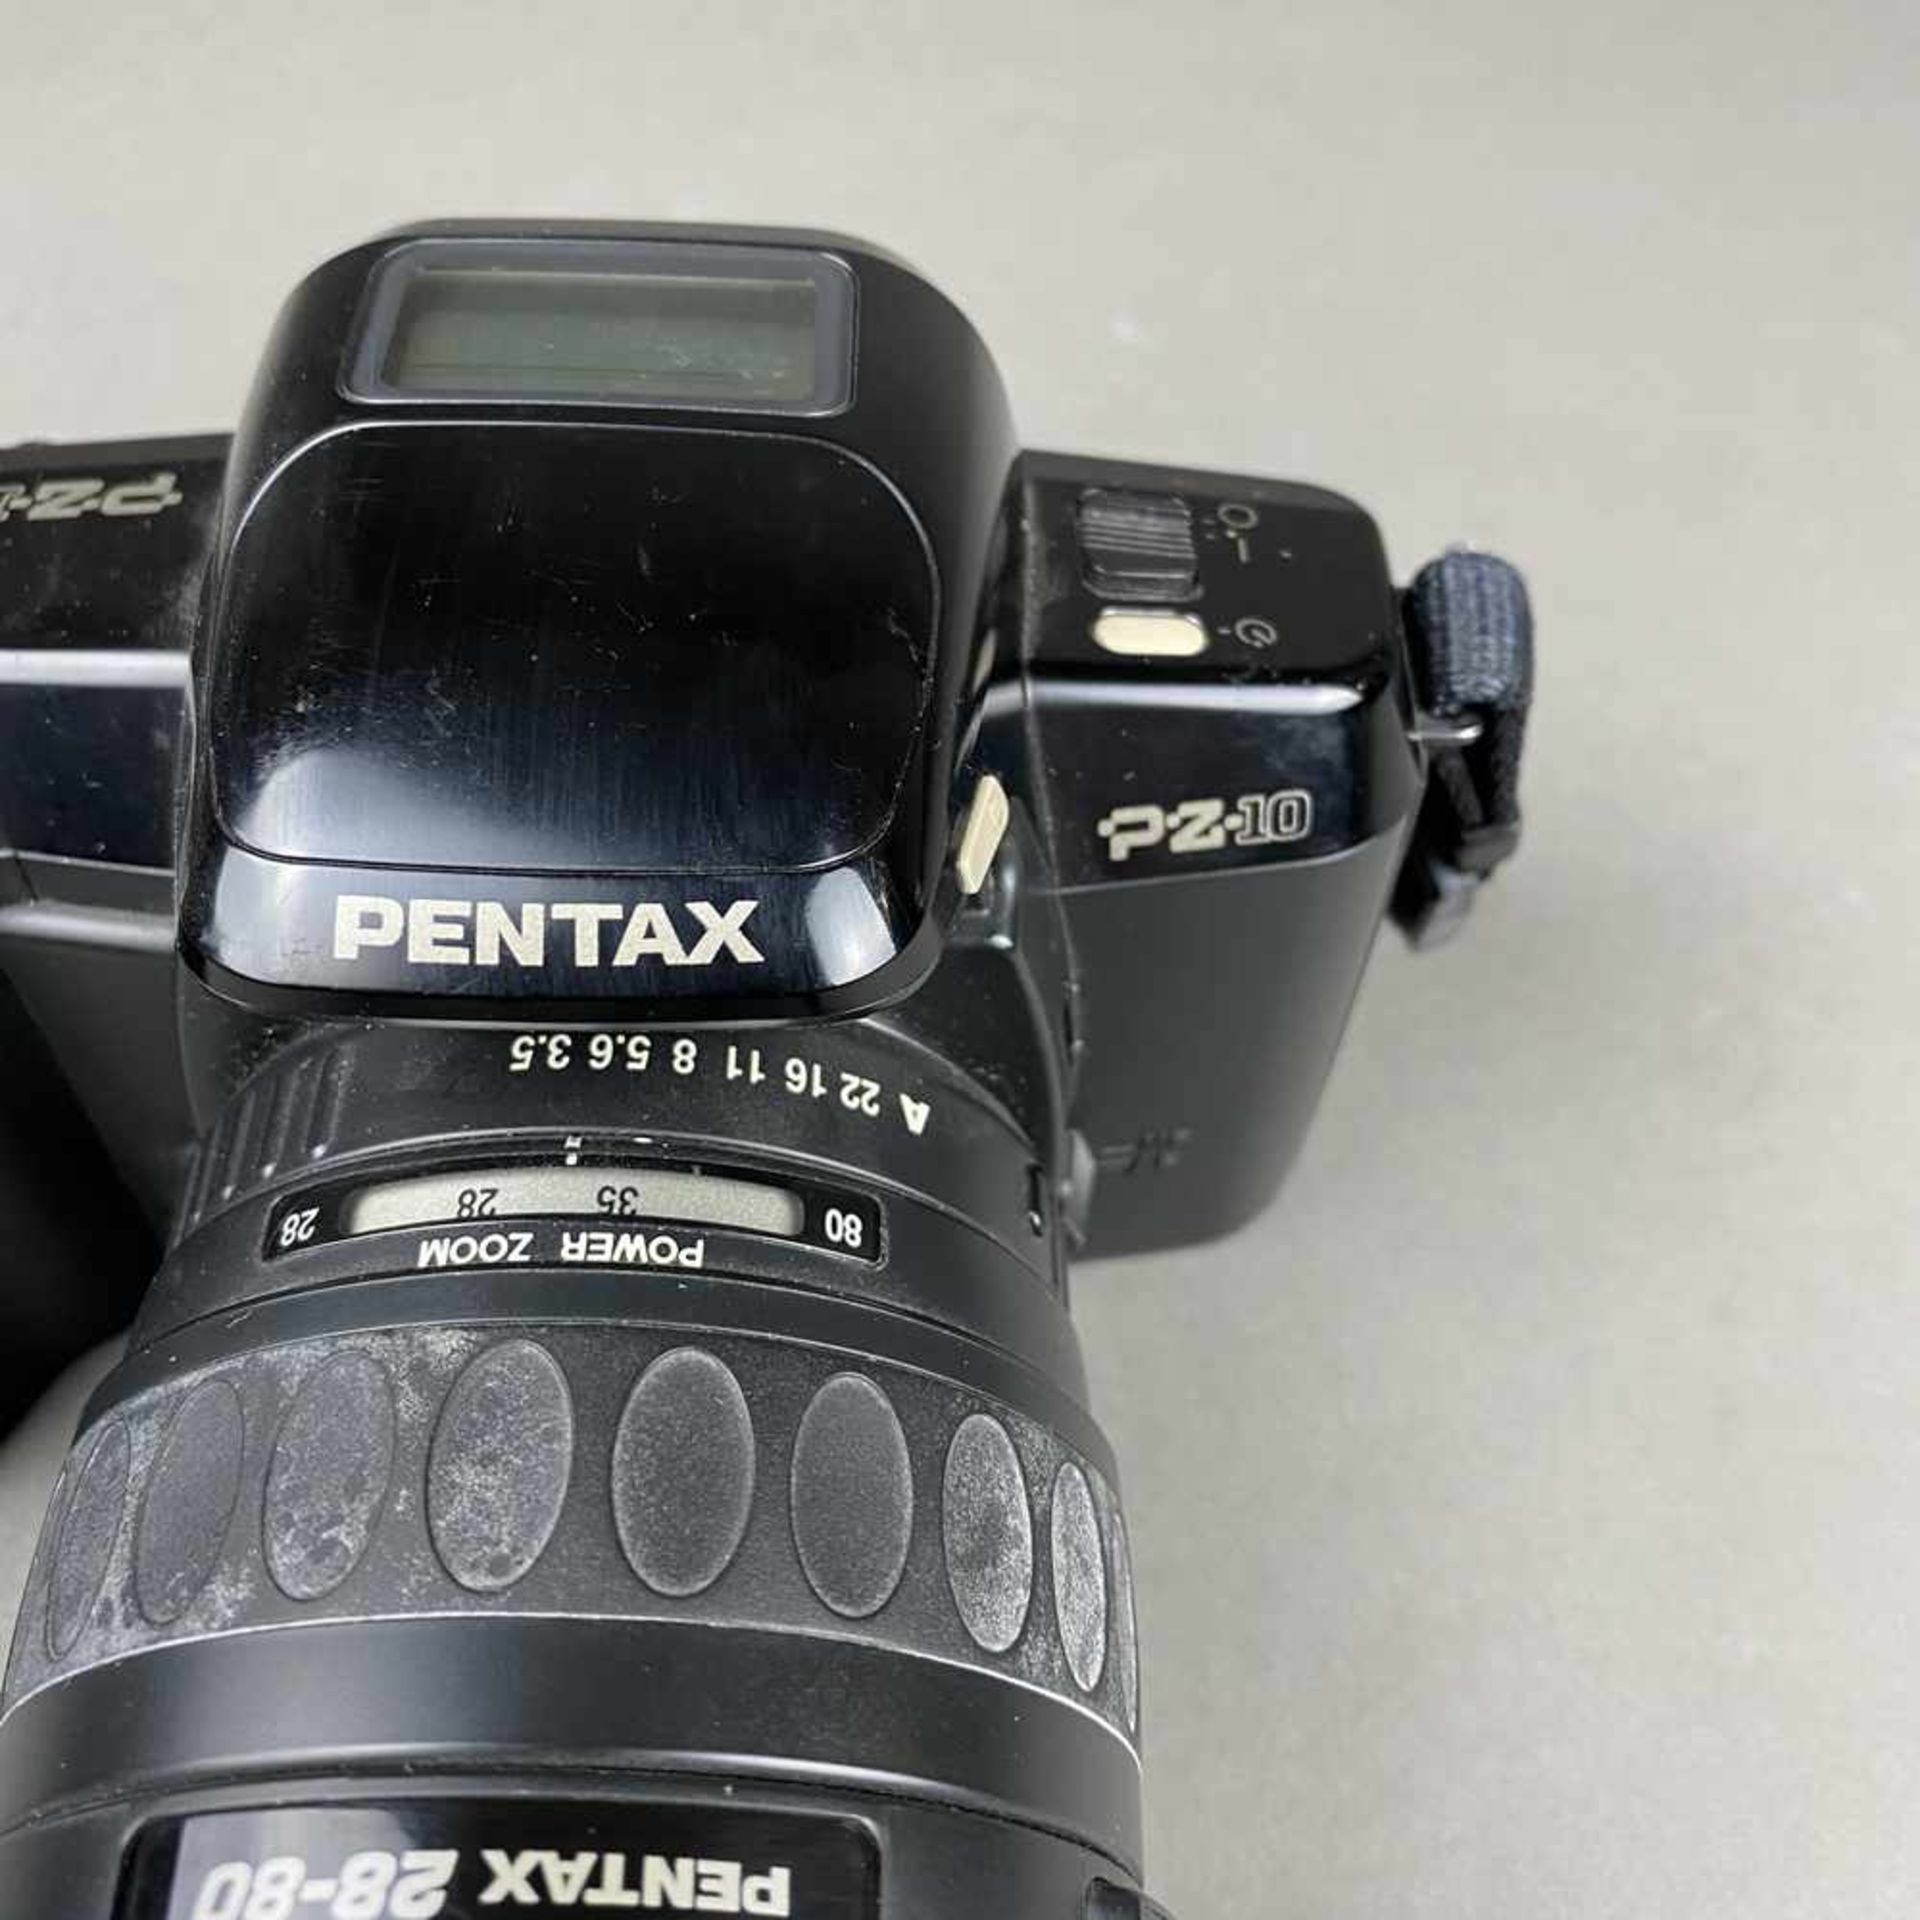 Spiegelreflex Kamera Pentax PZ-10 - Japan, Objektiv 1:3,5-4,7 / 28-80mm, gebrauchter Zustand, - Bild 3 aus 9